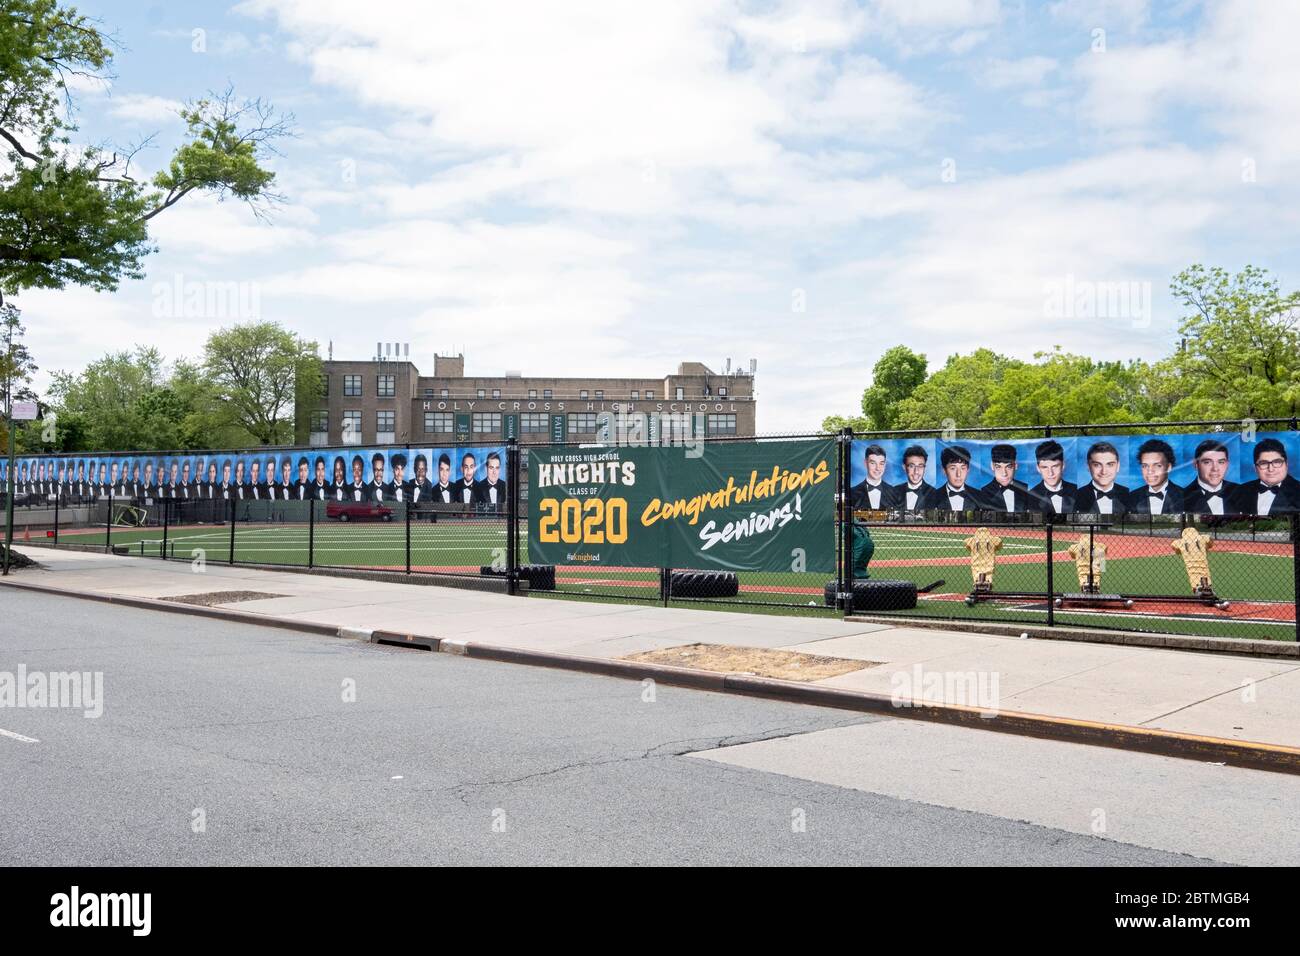 En lugar de una ceremonia de graduación, la Escuela Secundaria de Santa Cruz colgó una pancarta y fotos de los graduados. En Flushing, Queens, Nueva York. Foto de stock